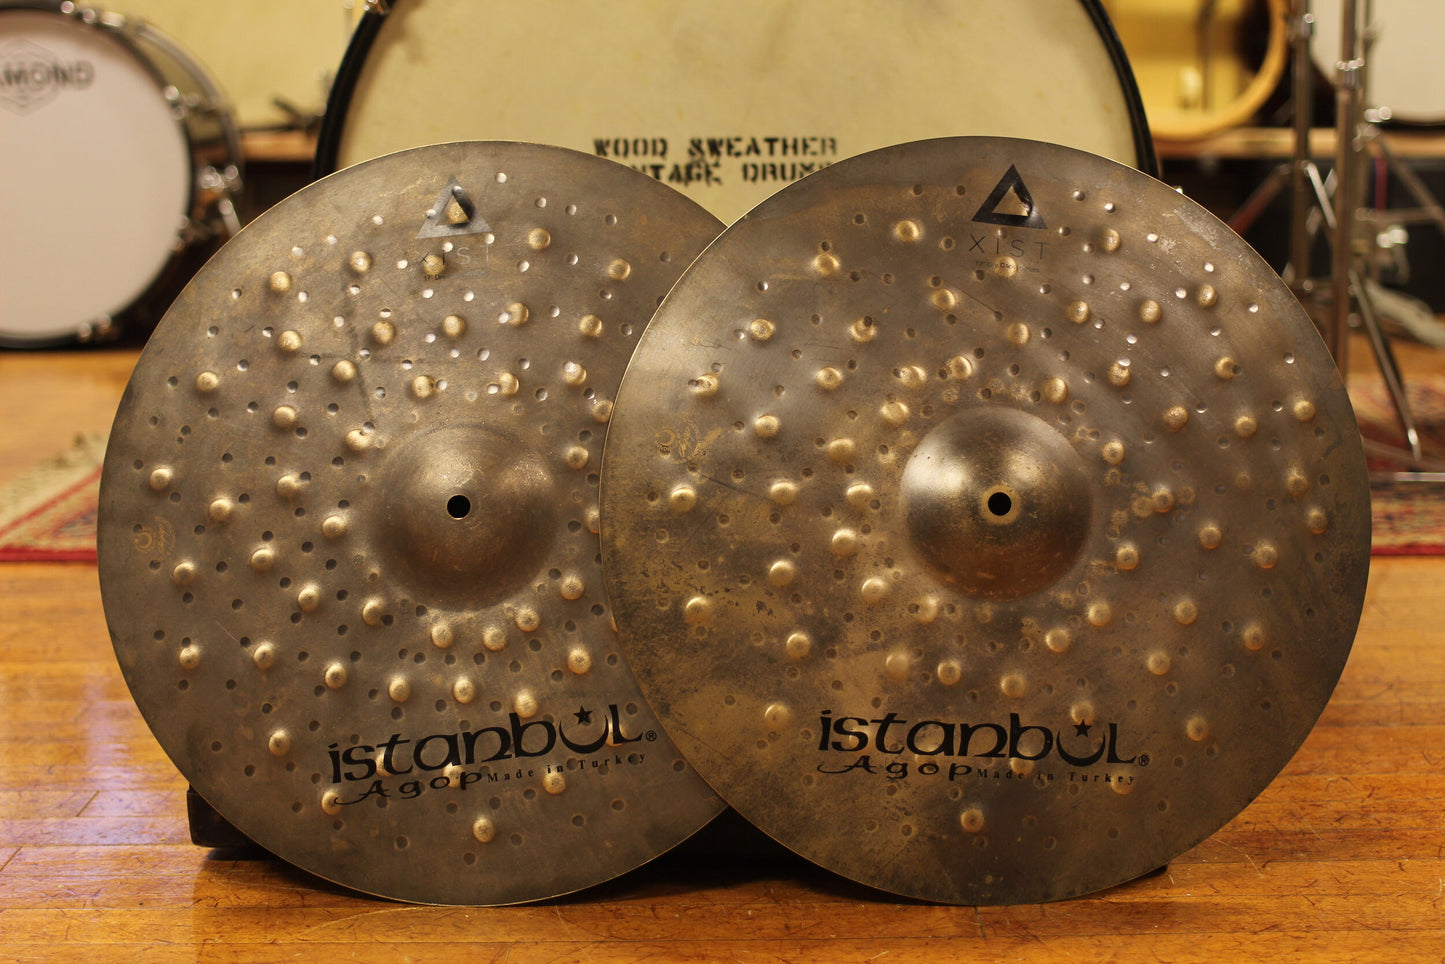 Istanbul Agop 17" Dry Dark Hi Hat Cymbals 1120g/1460g